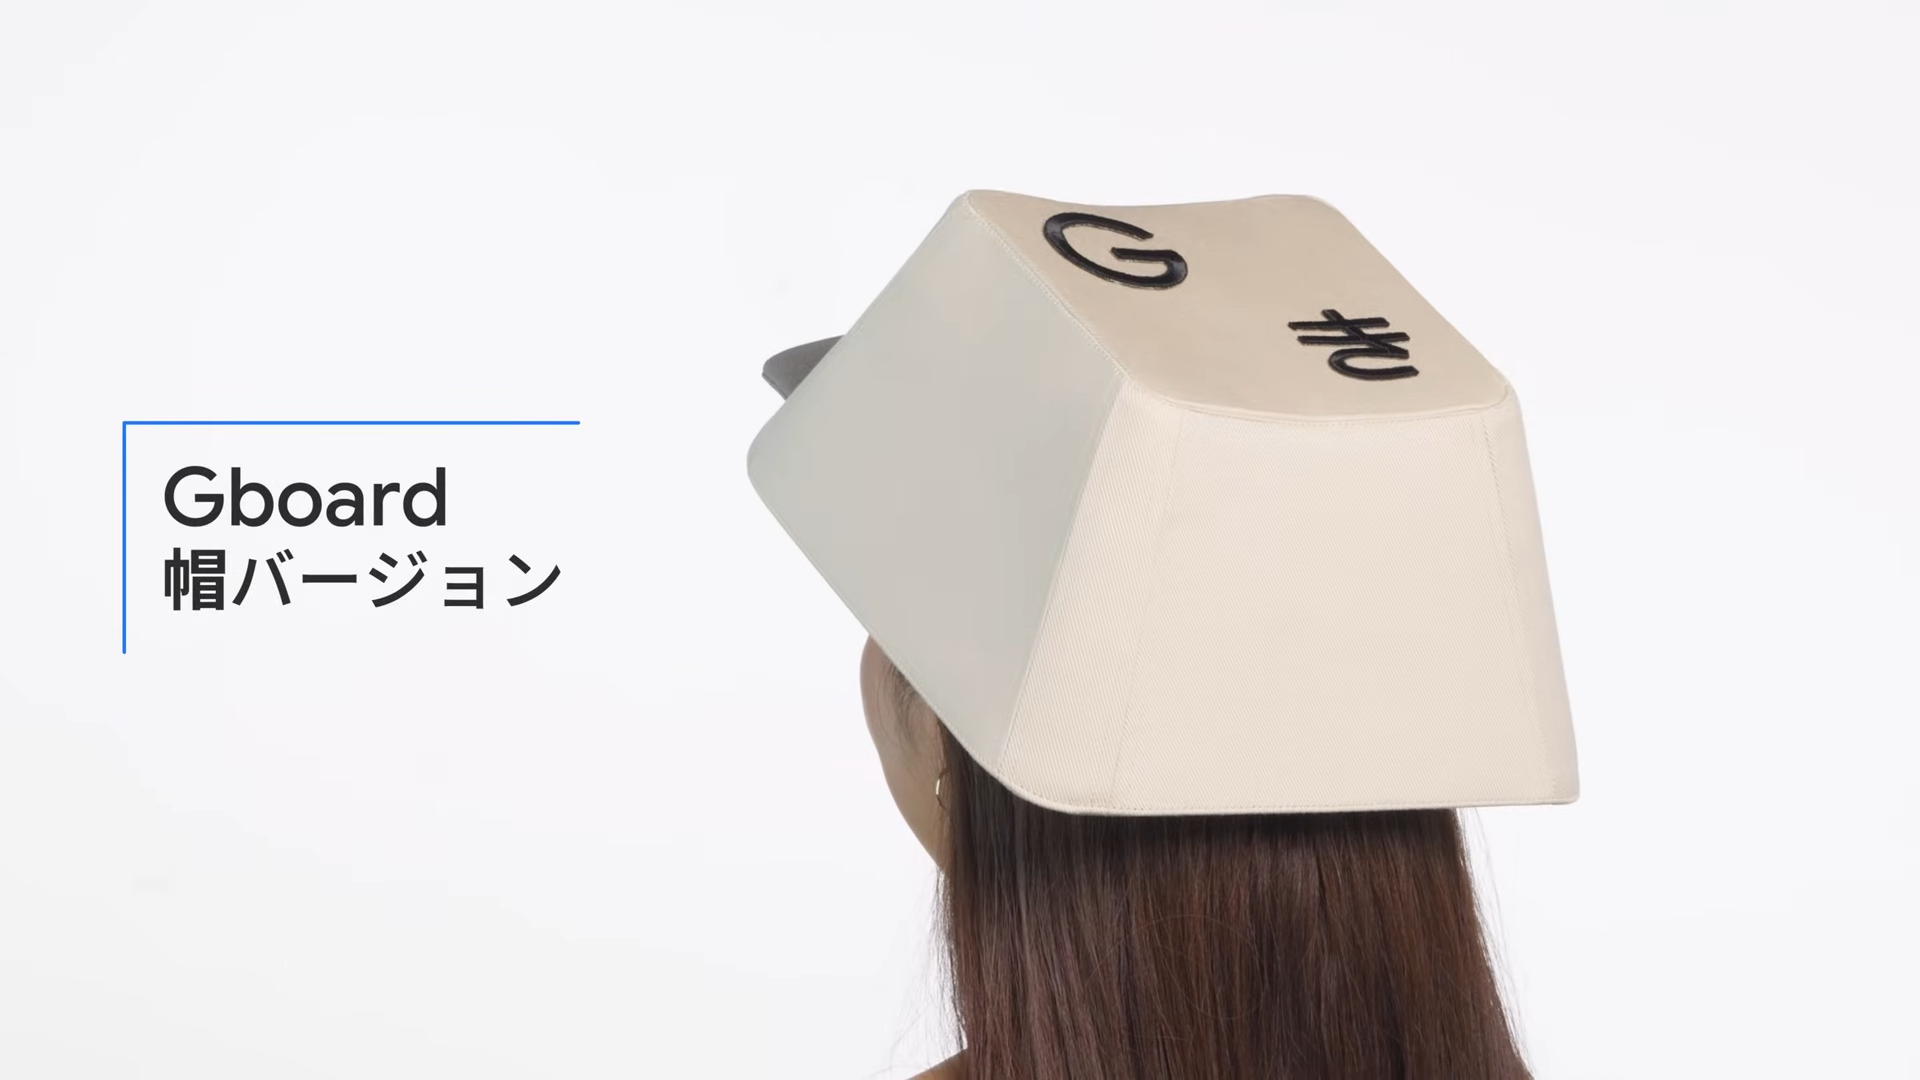 Czapka z klawiaturą Gboard, czyli szalony pomysł japońskiego Google